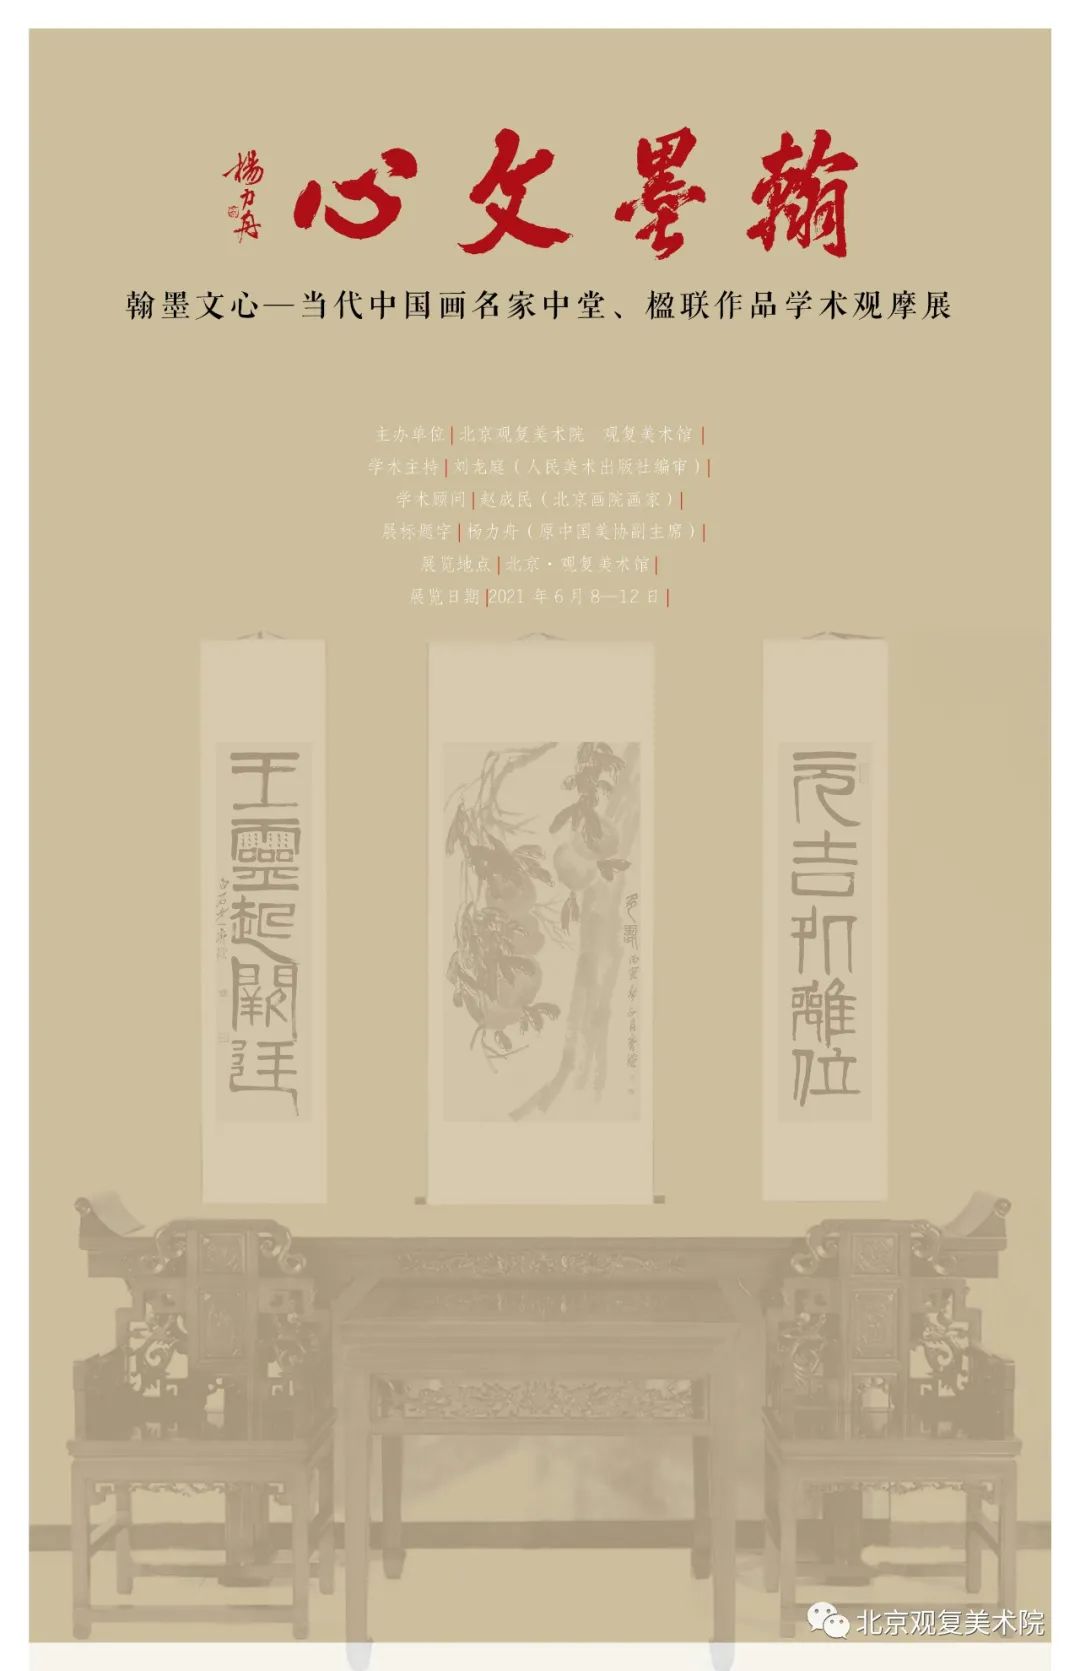 翰墨文心--当代中国画名家中堂作品学术观摩展